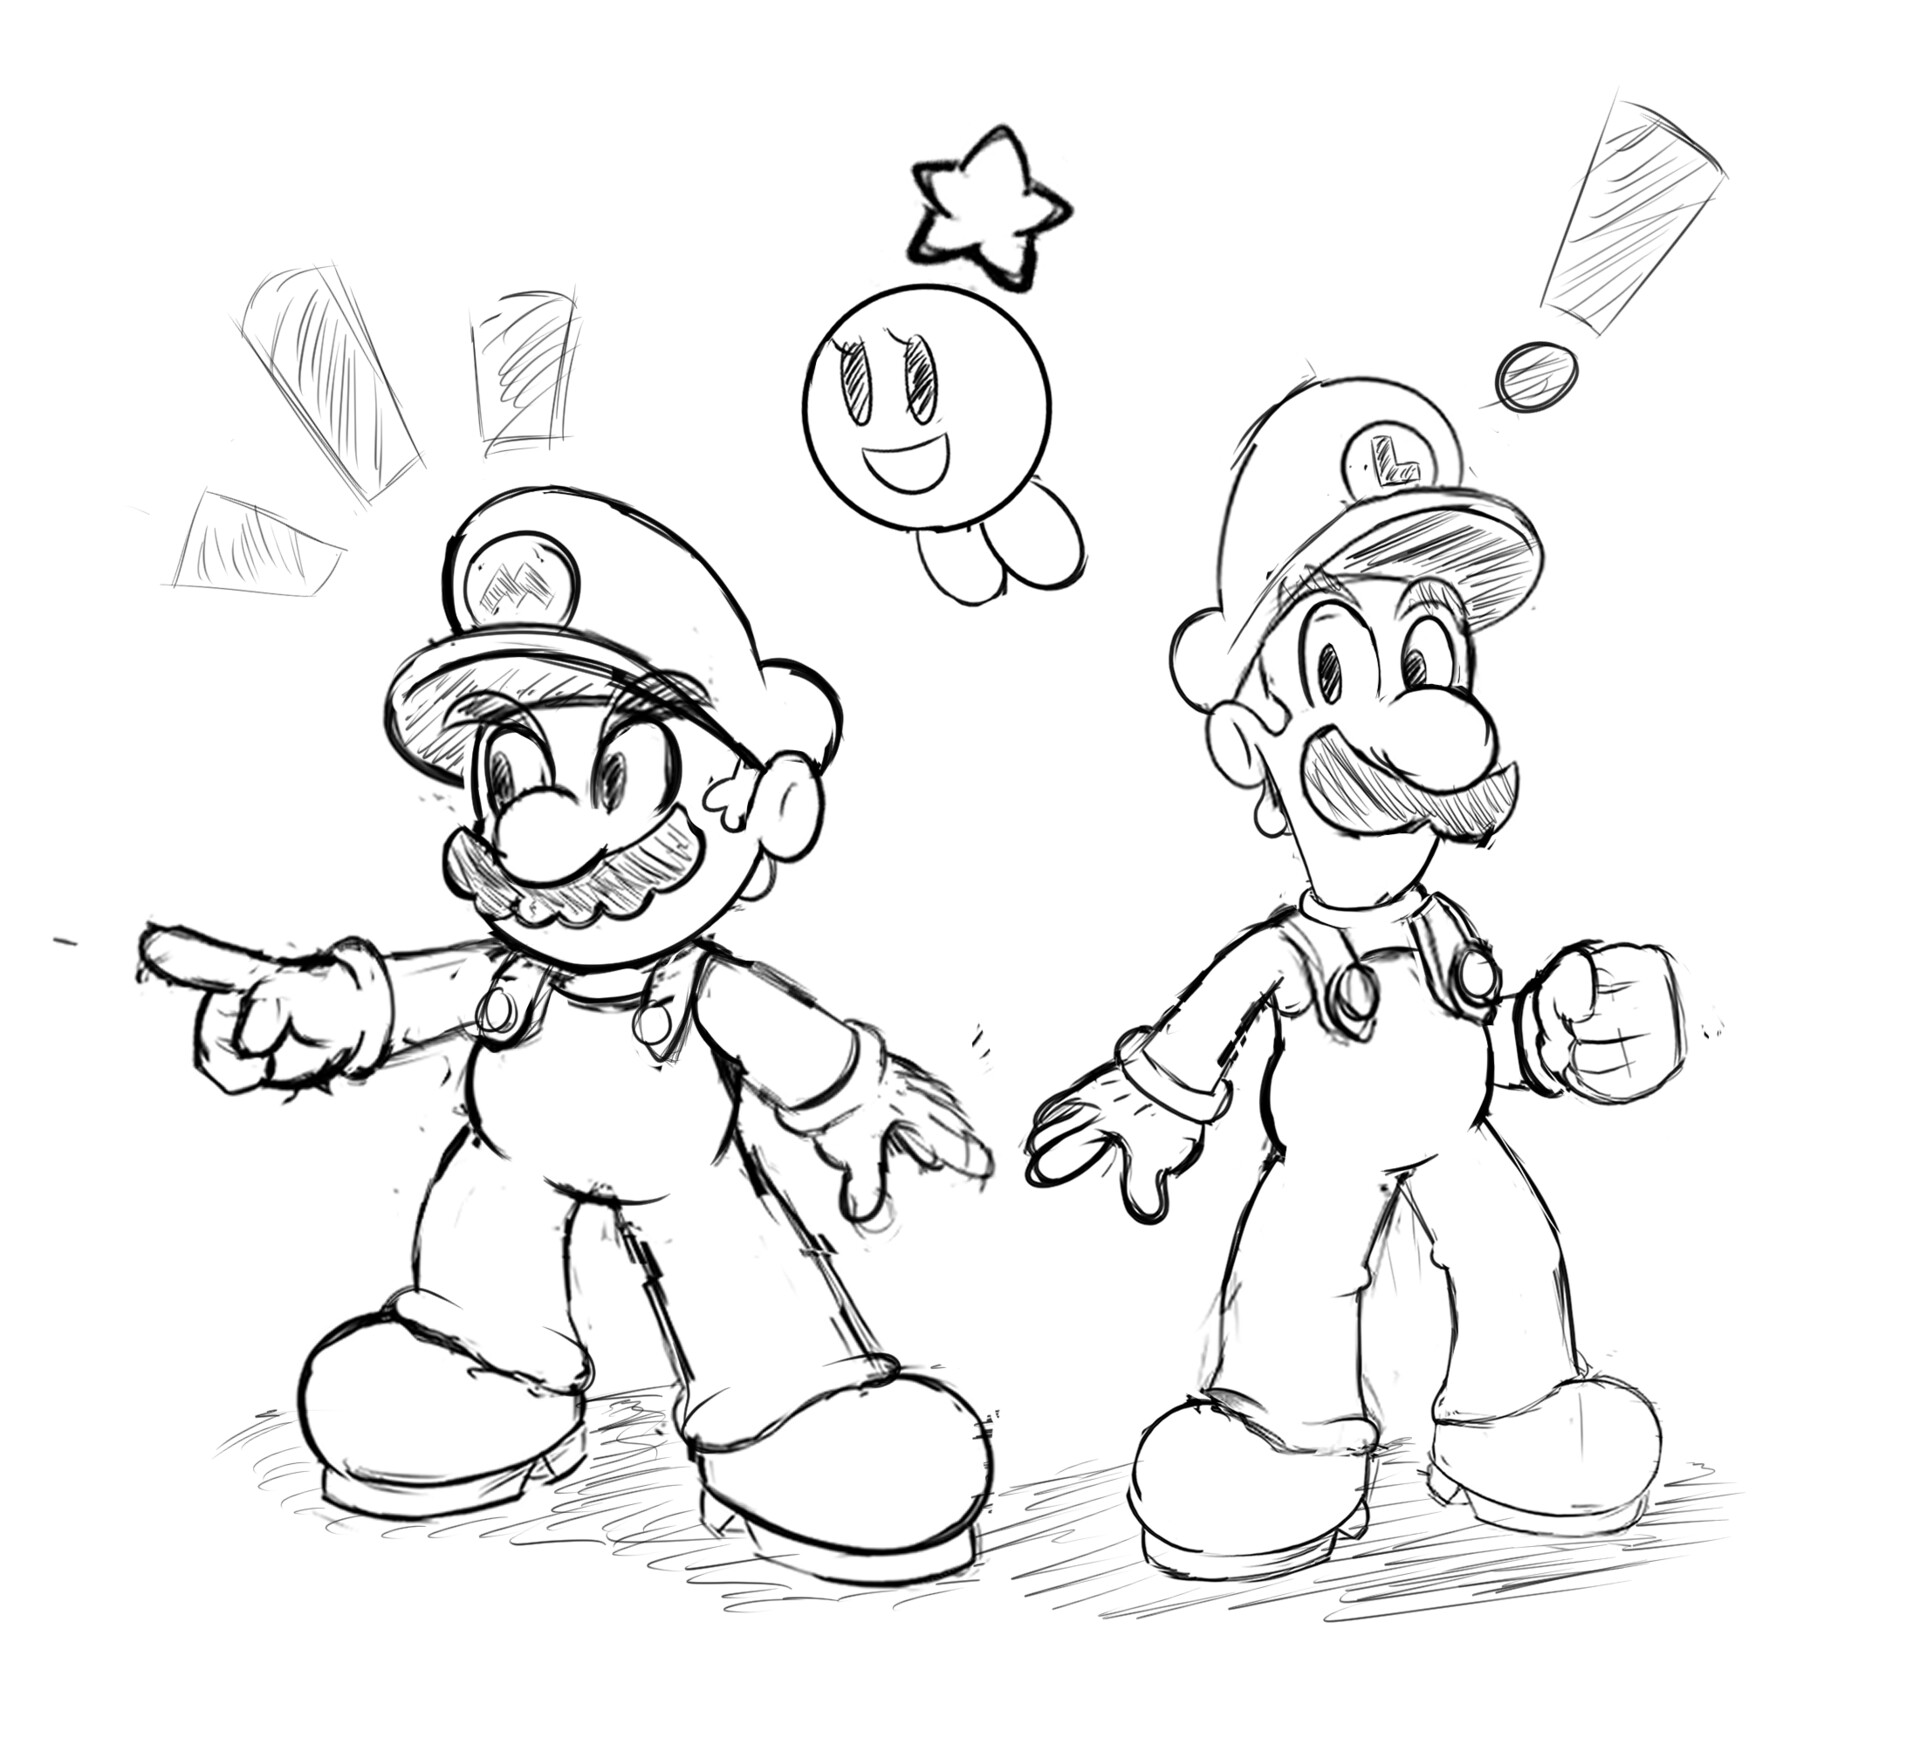 Luigi sketch page : r/Mario